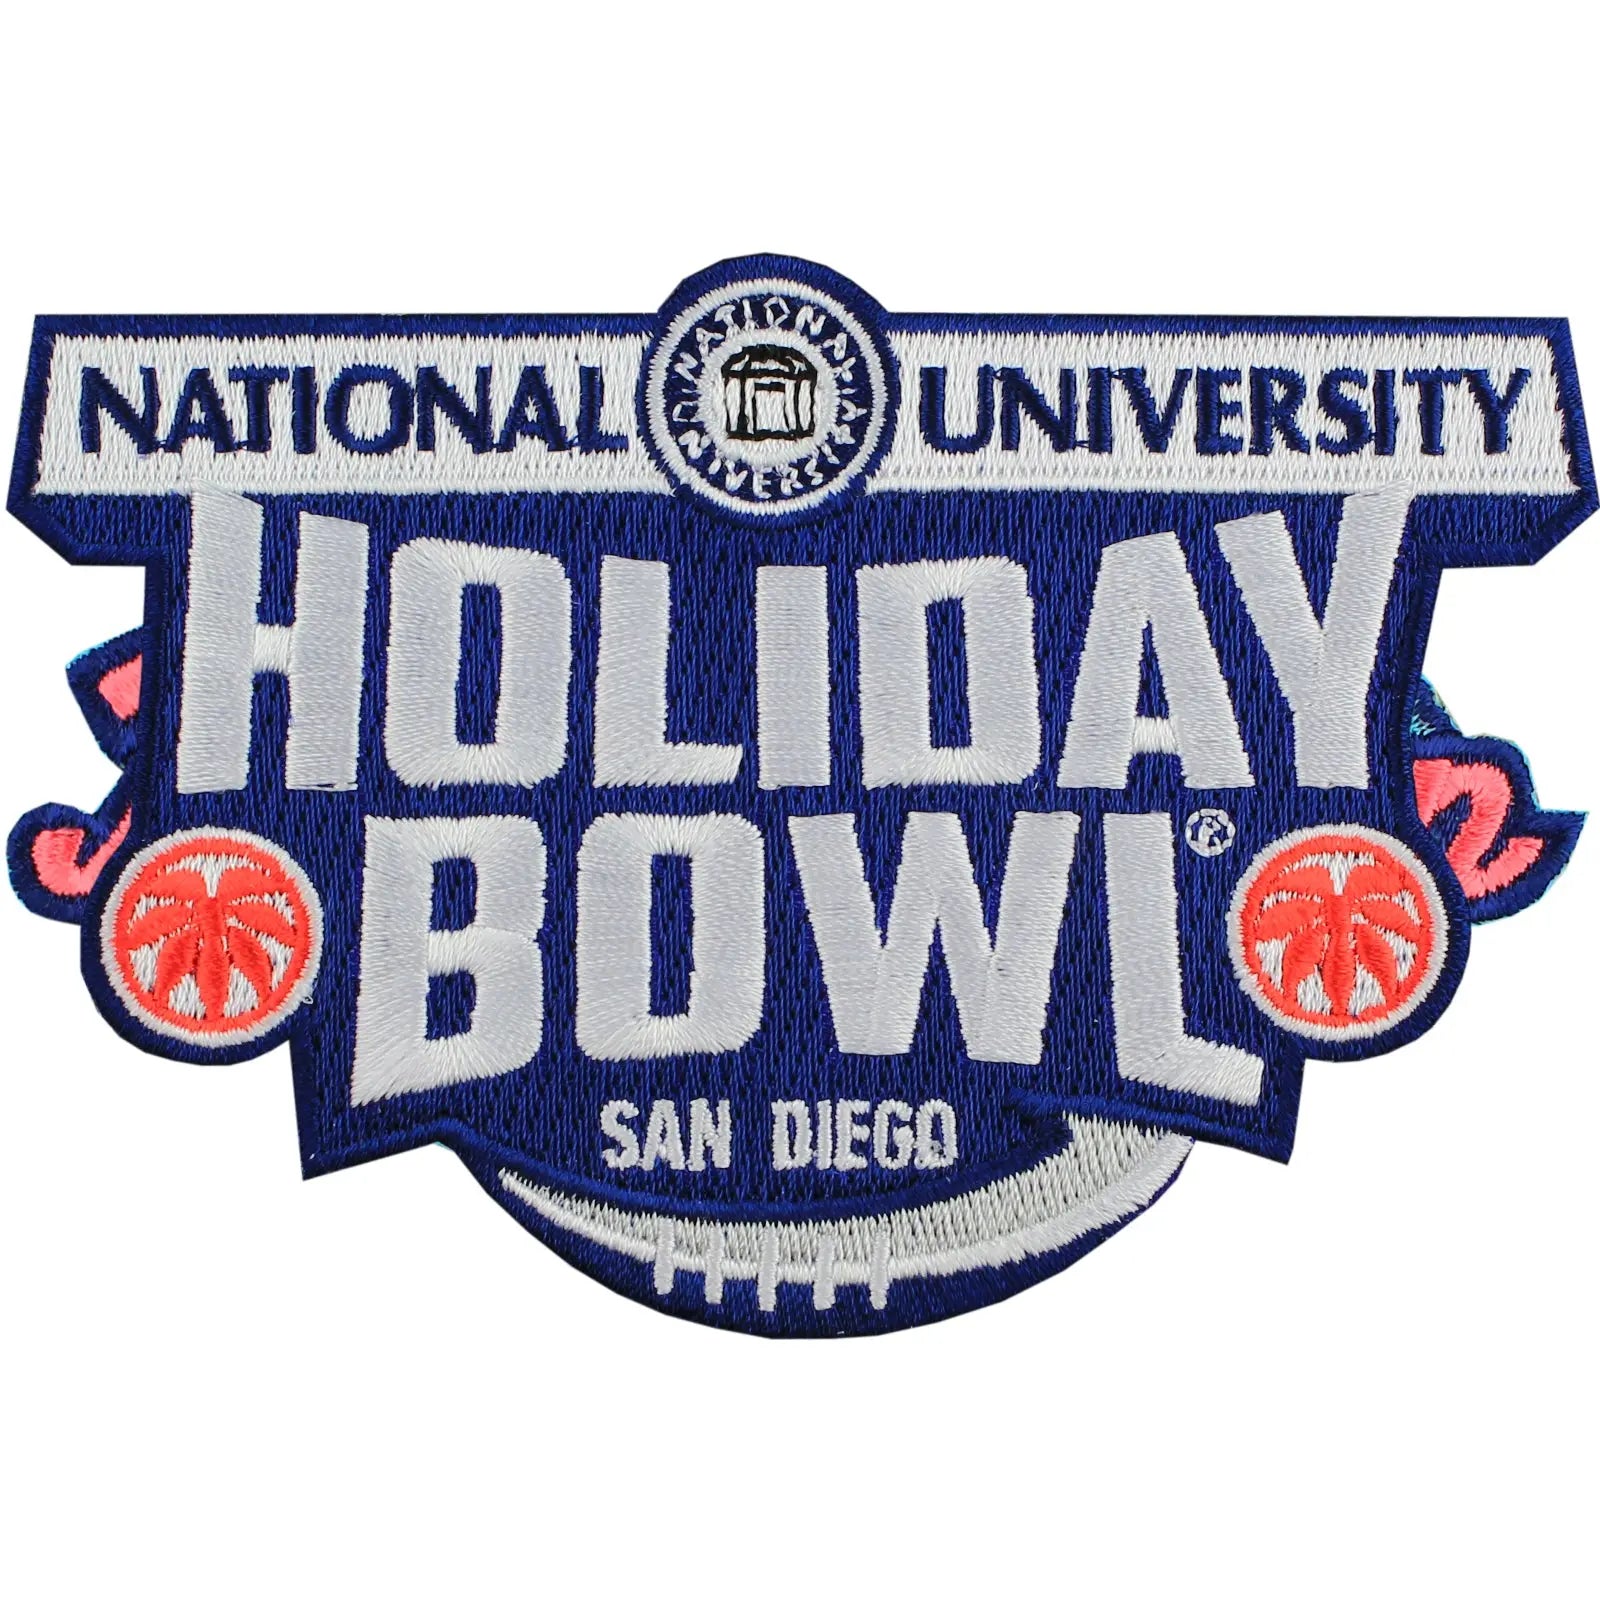 National University Holiday Bowl Jersey Patch Nebraska vs. USC (2014) 